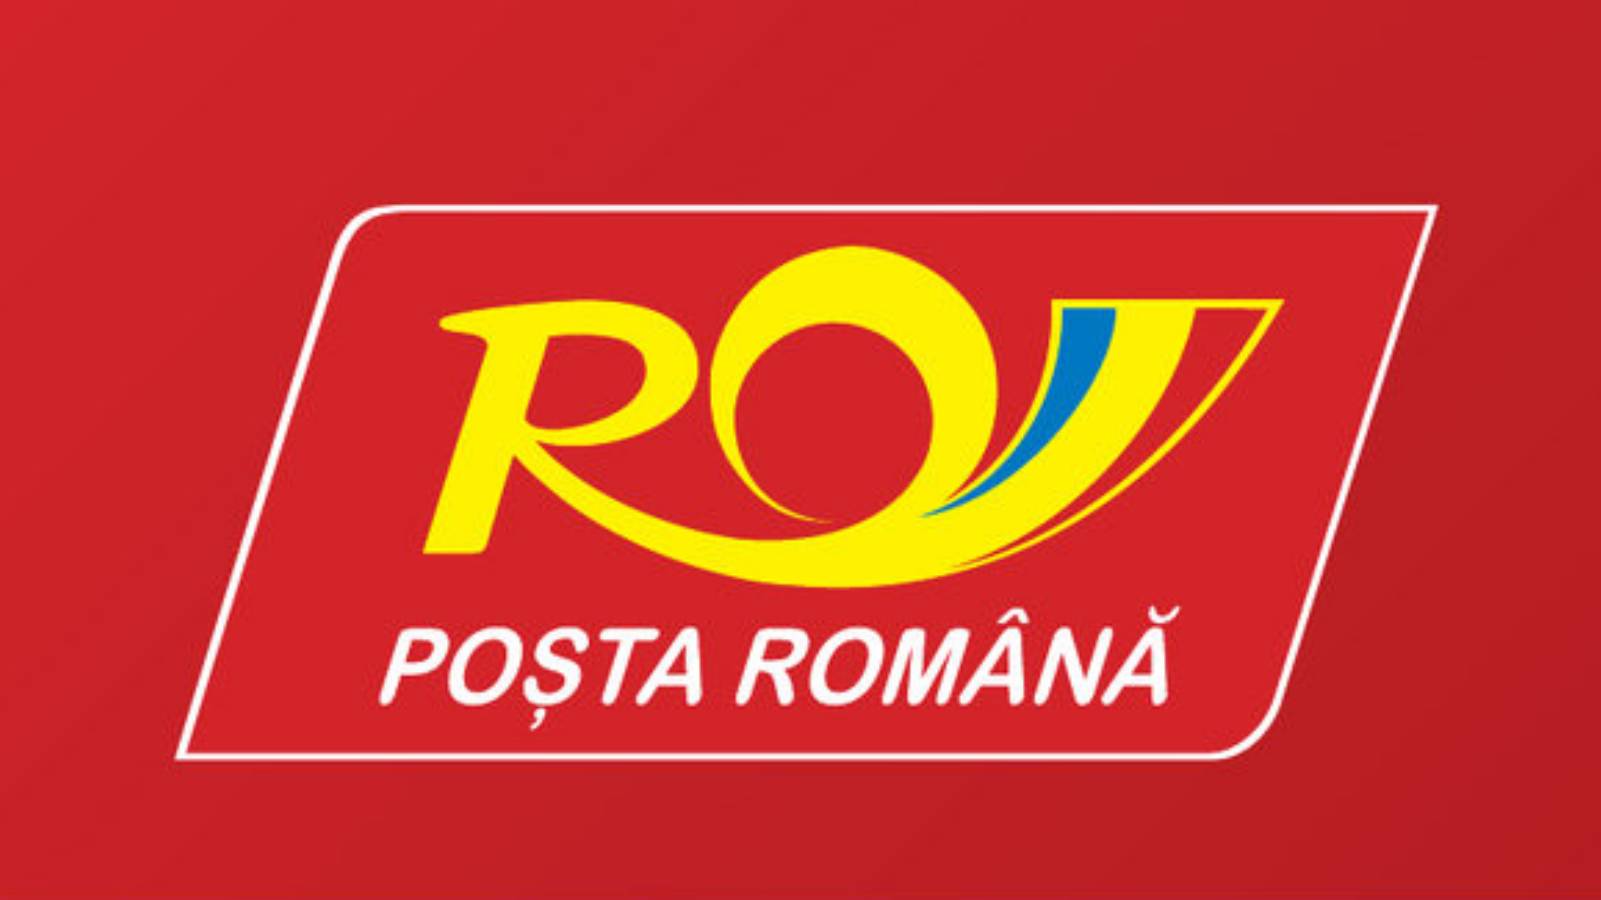 De Roemeense Post heeft phishing betaald